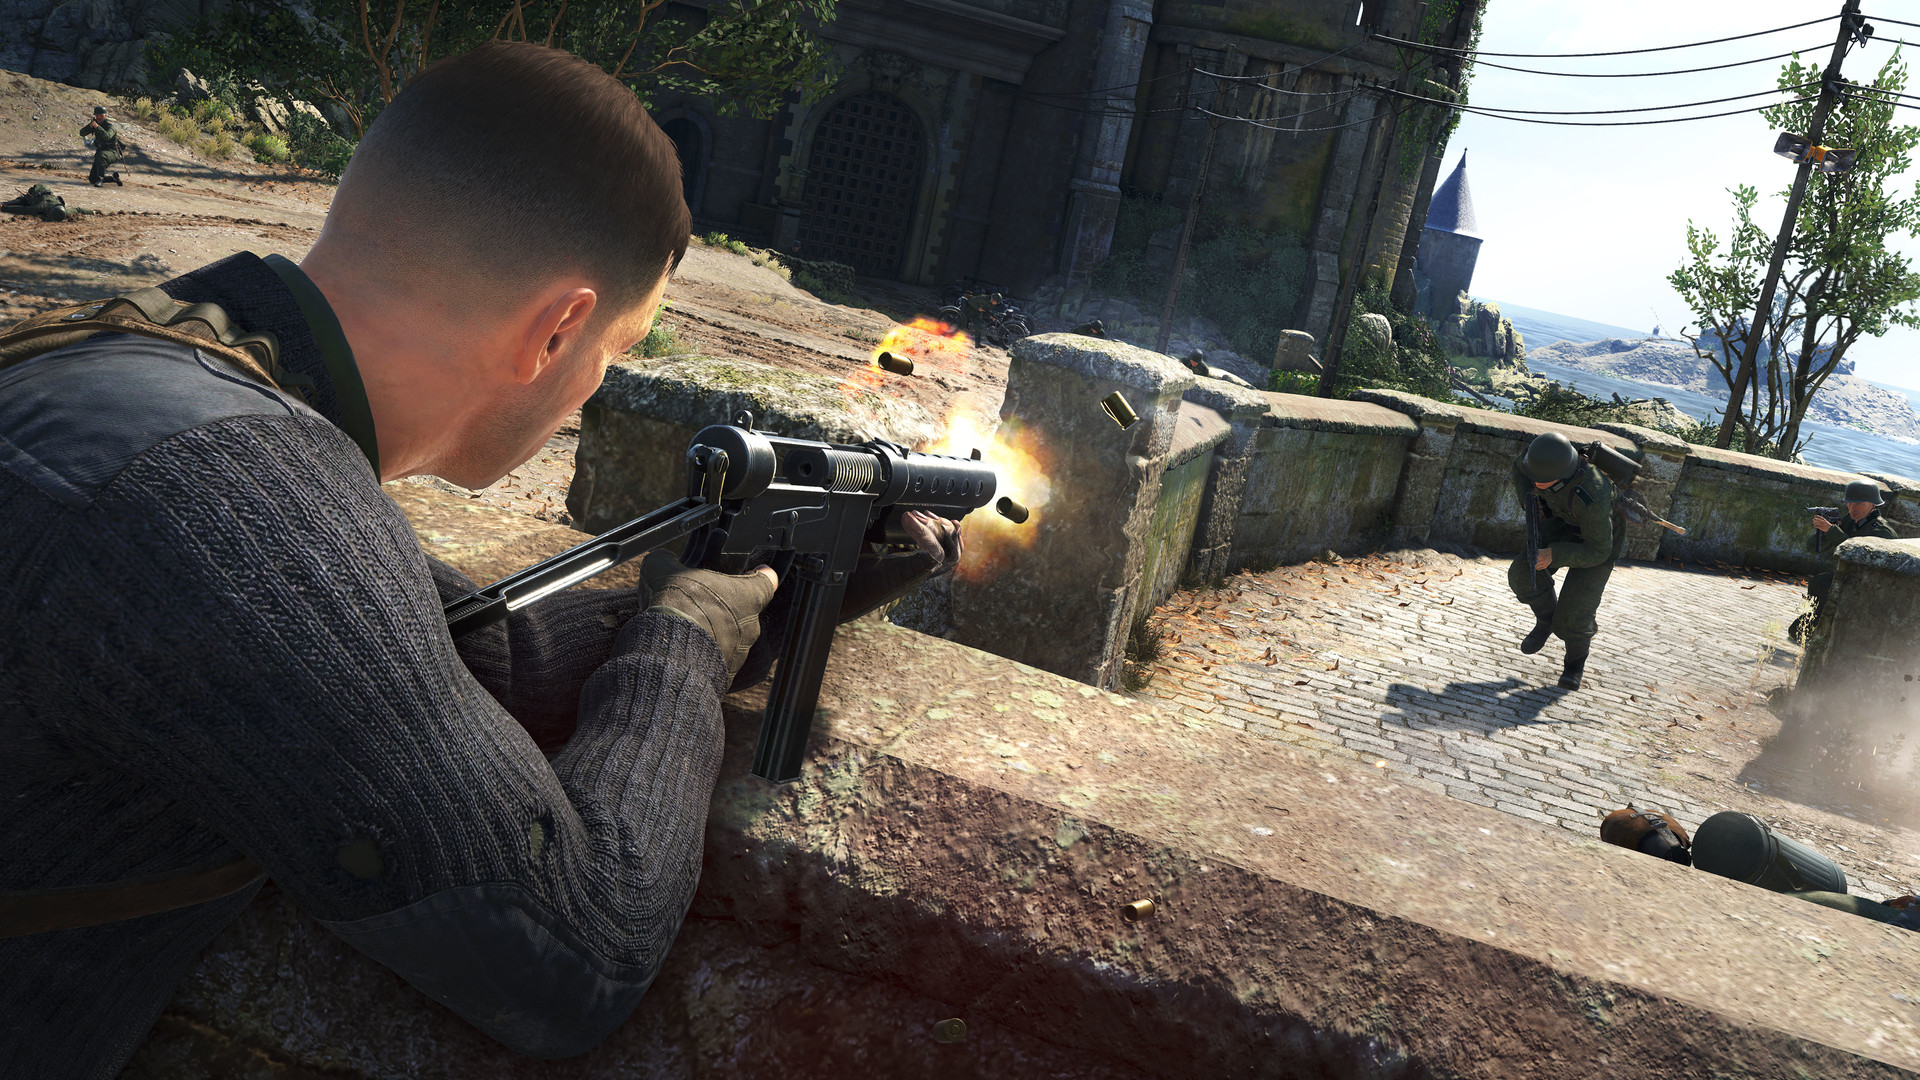 Sniper Elite 5 + DLC Wolf Mountain [XBOX ONE+X/S] 🔥🎮